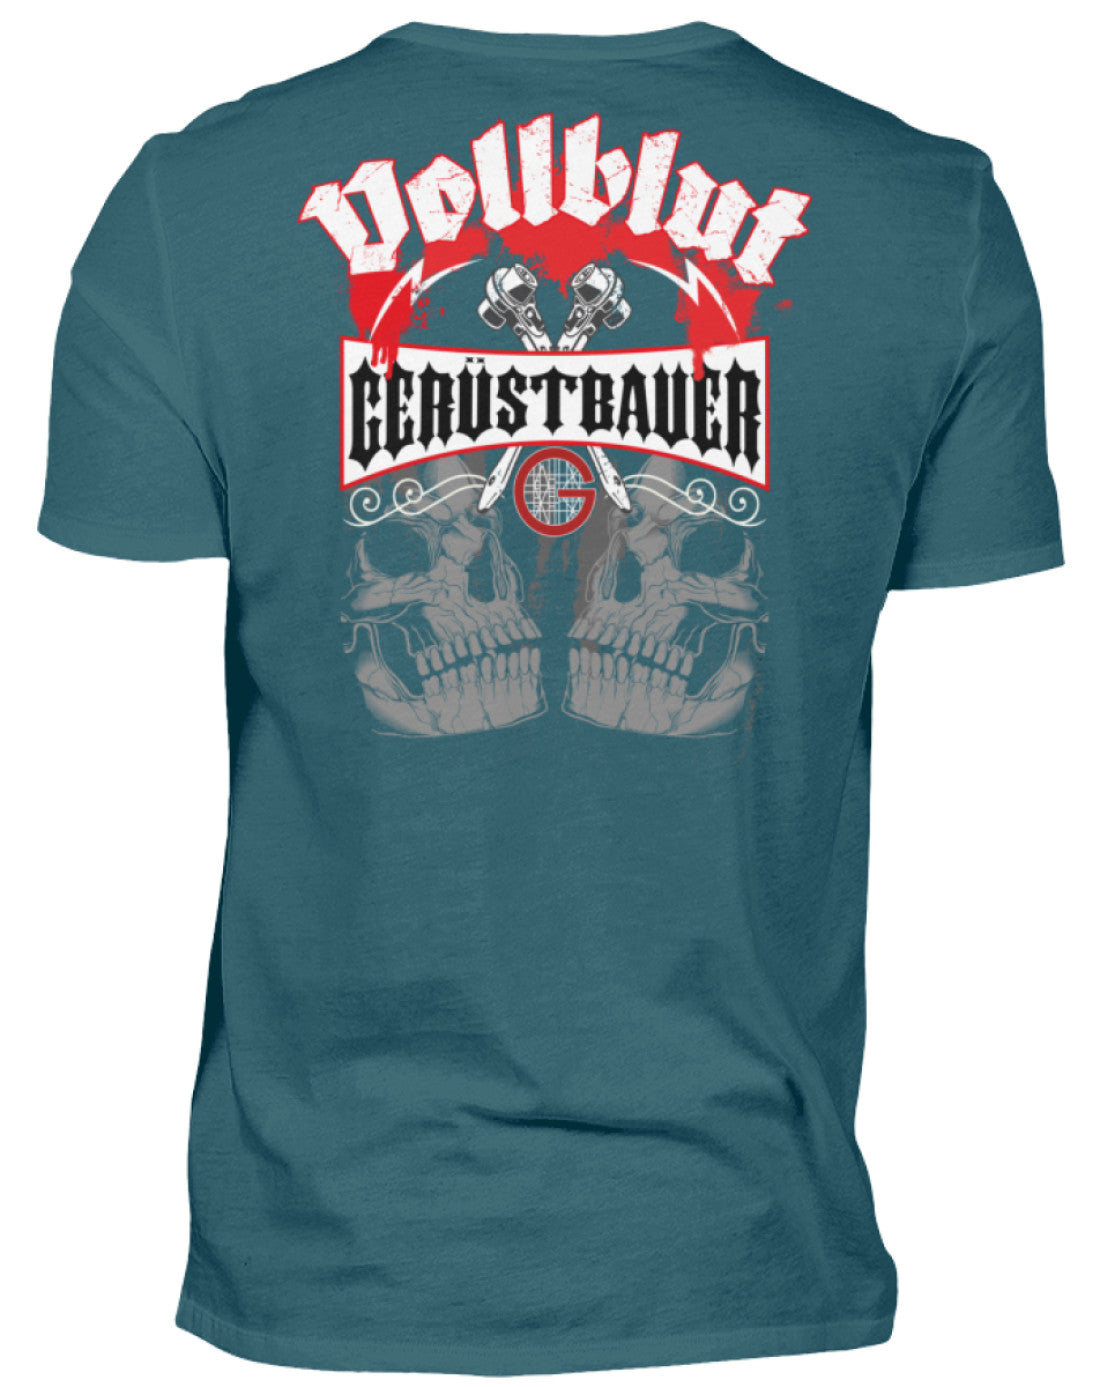 Vollblut Gerüstbauer €24.95 Gerüstbauer - Shop >>